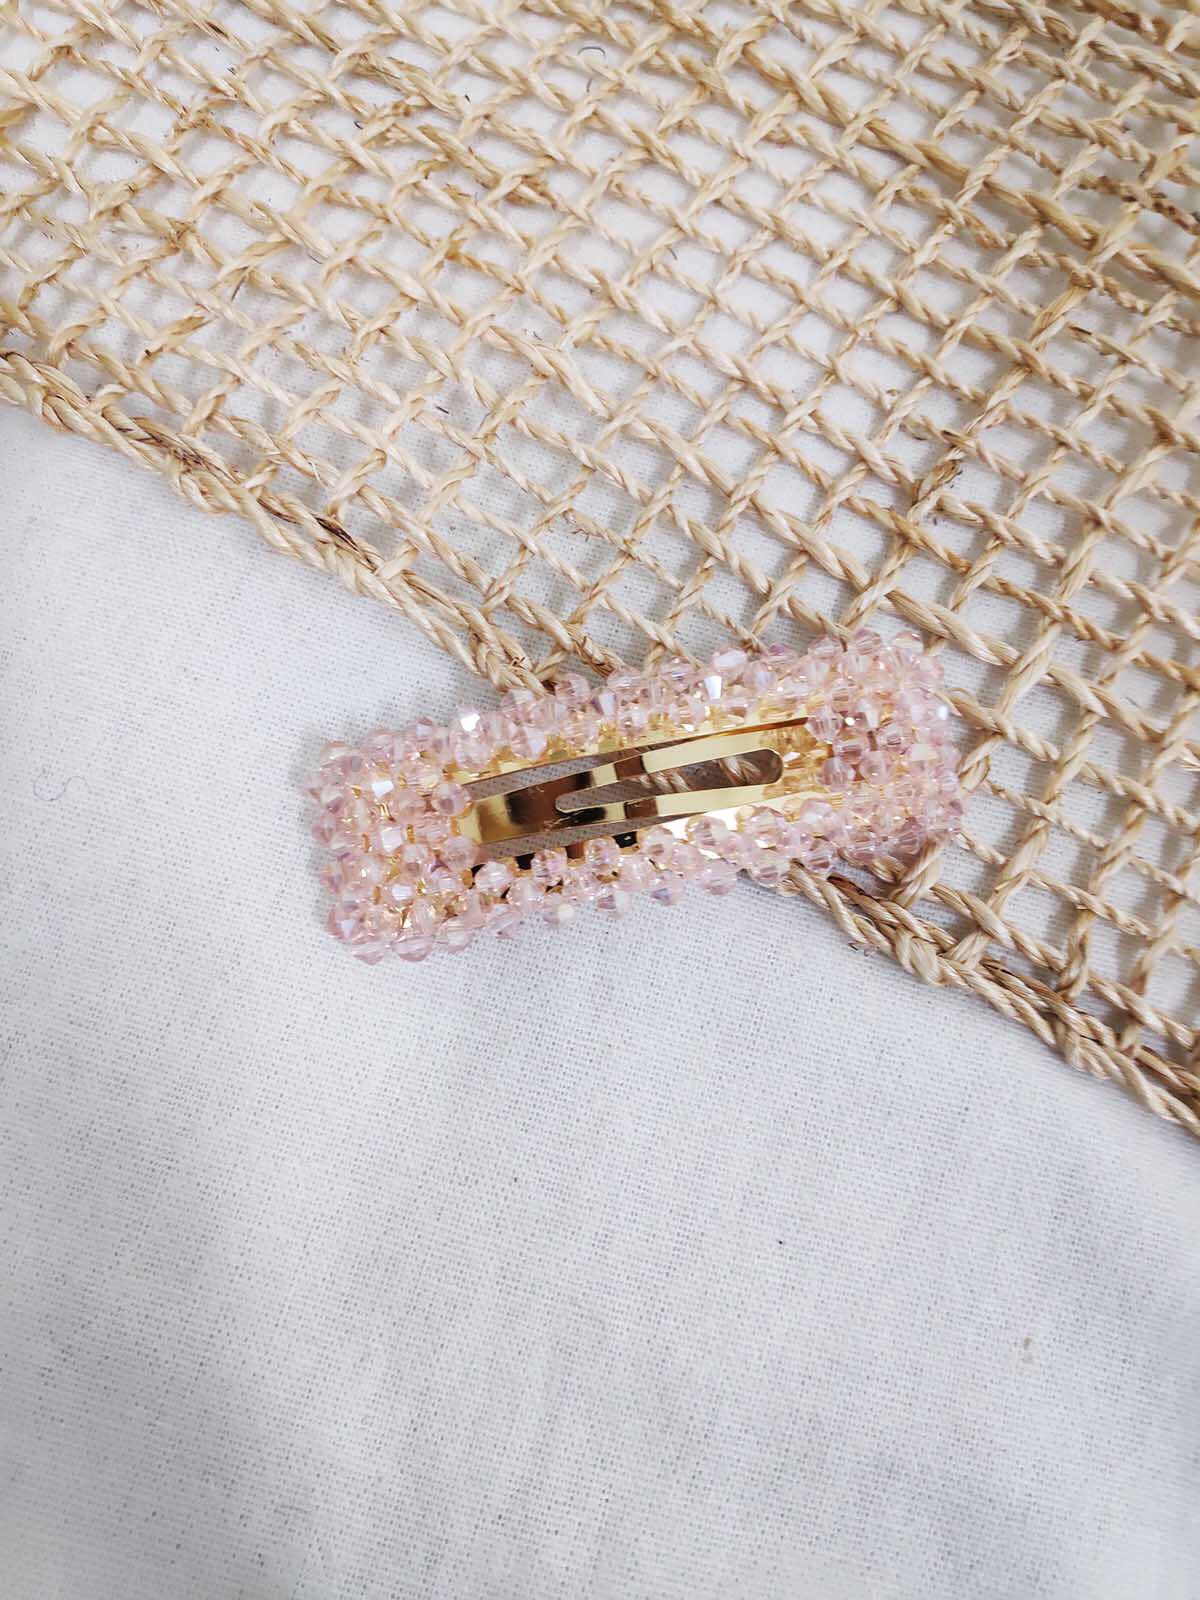 Lilly crystal hair clip